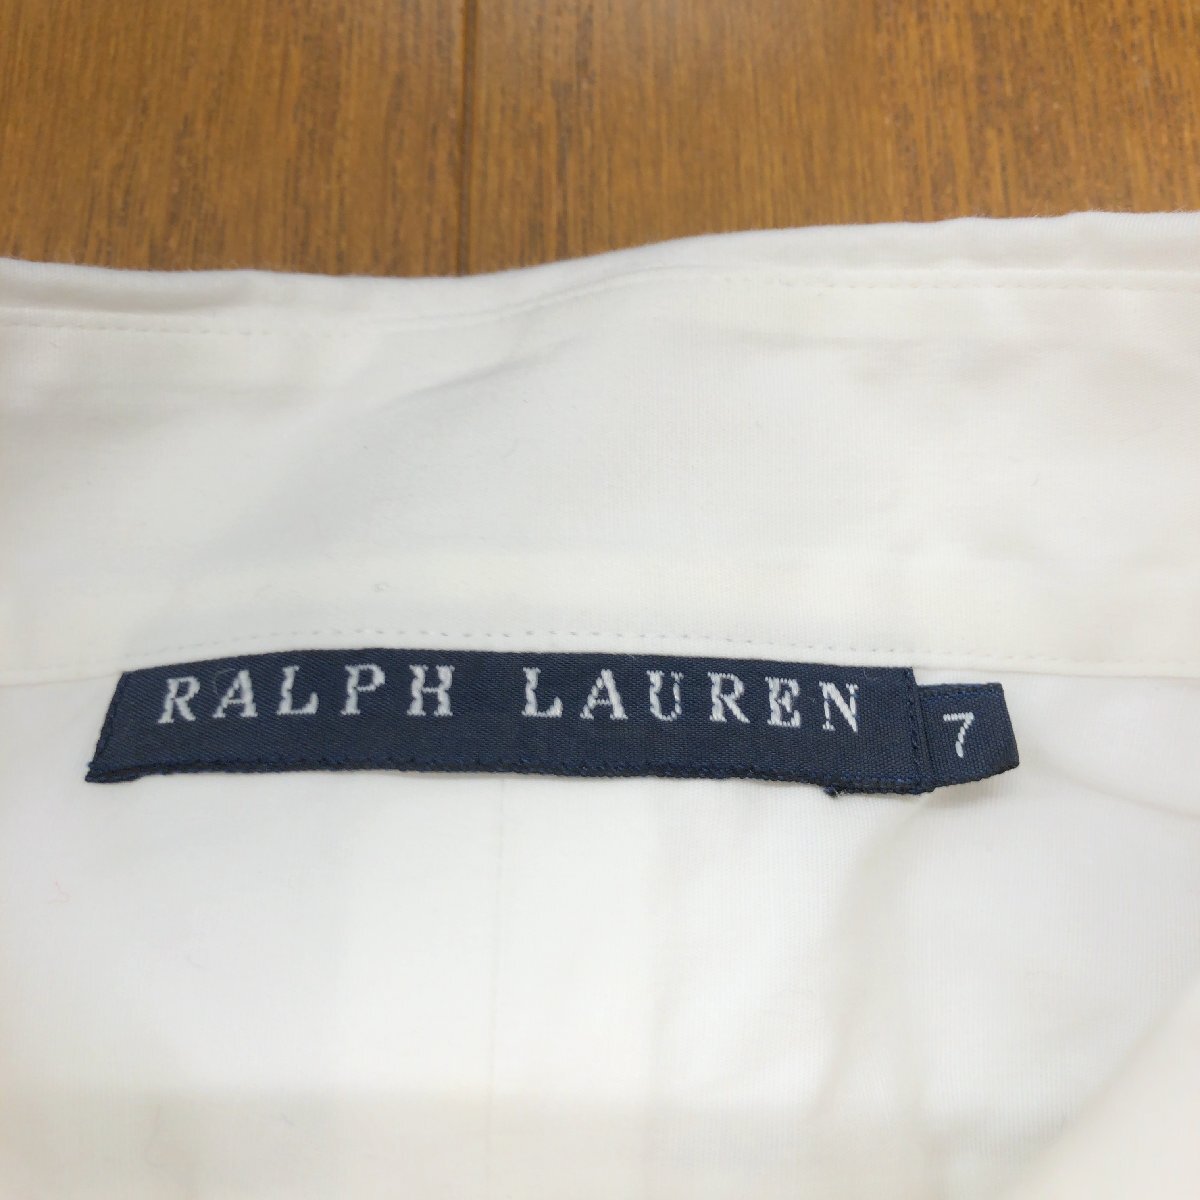 RALPH LAUREN ラルフローレン ポニー刺繍 ストレッチ シャツ 7 白 ホワイト 日本製 長袖 ブラウス 国内正規品 レディース 女性用_画像3